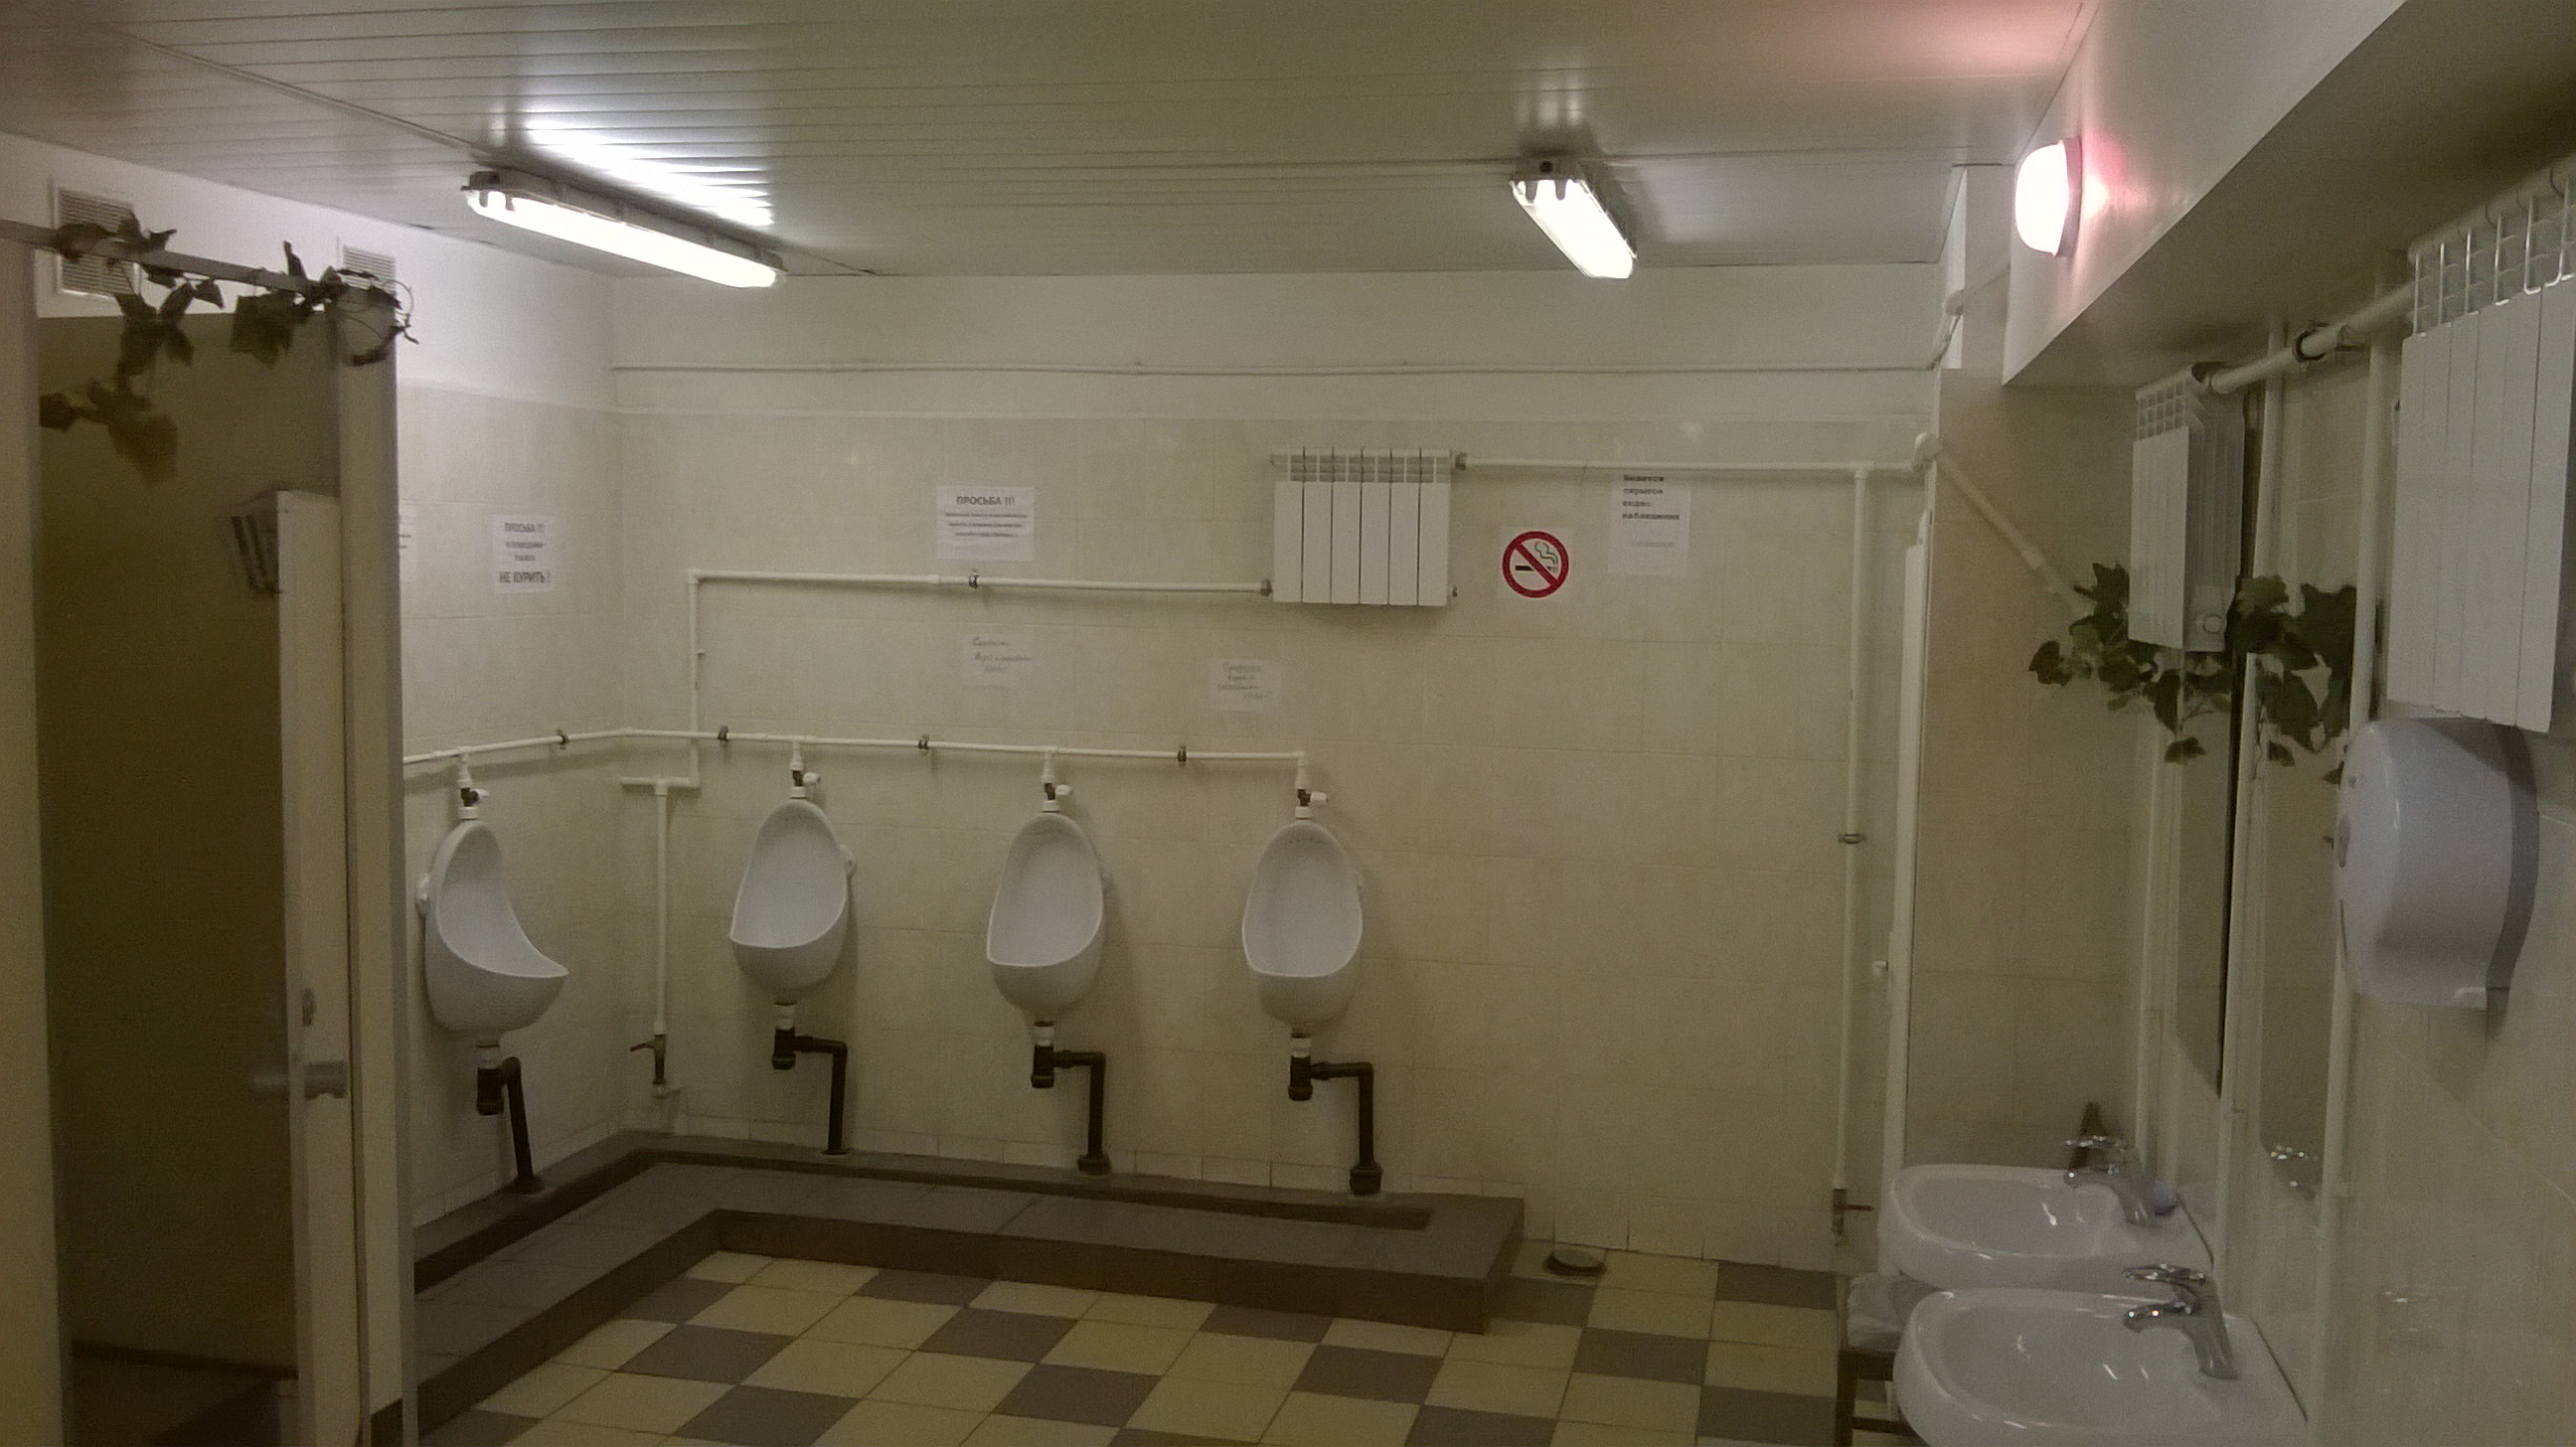 Общественная душевая камера. Общественный туалет. Общественный туалет внутри. Сантехника для общественных туалетов. Туалет на производстве.